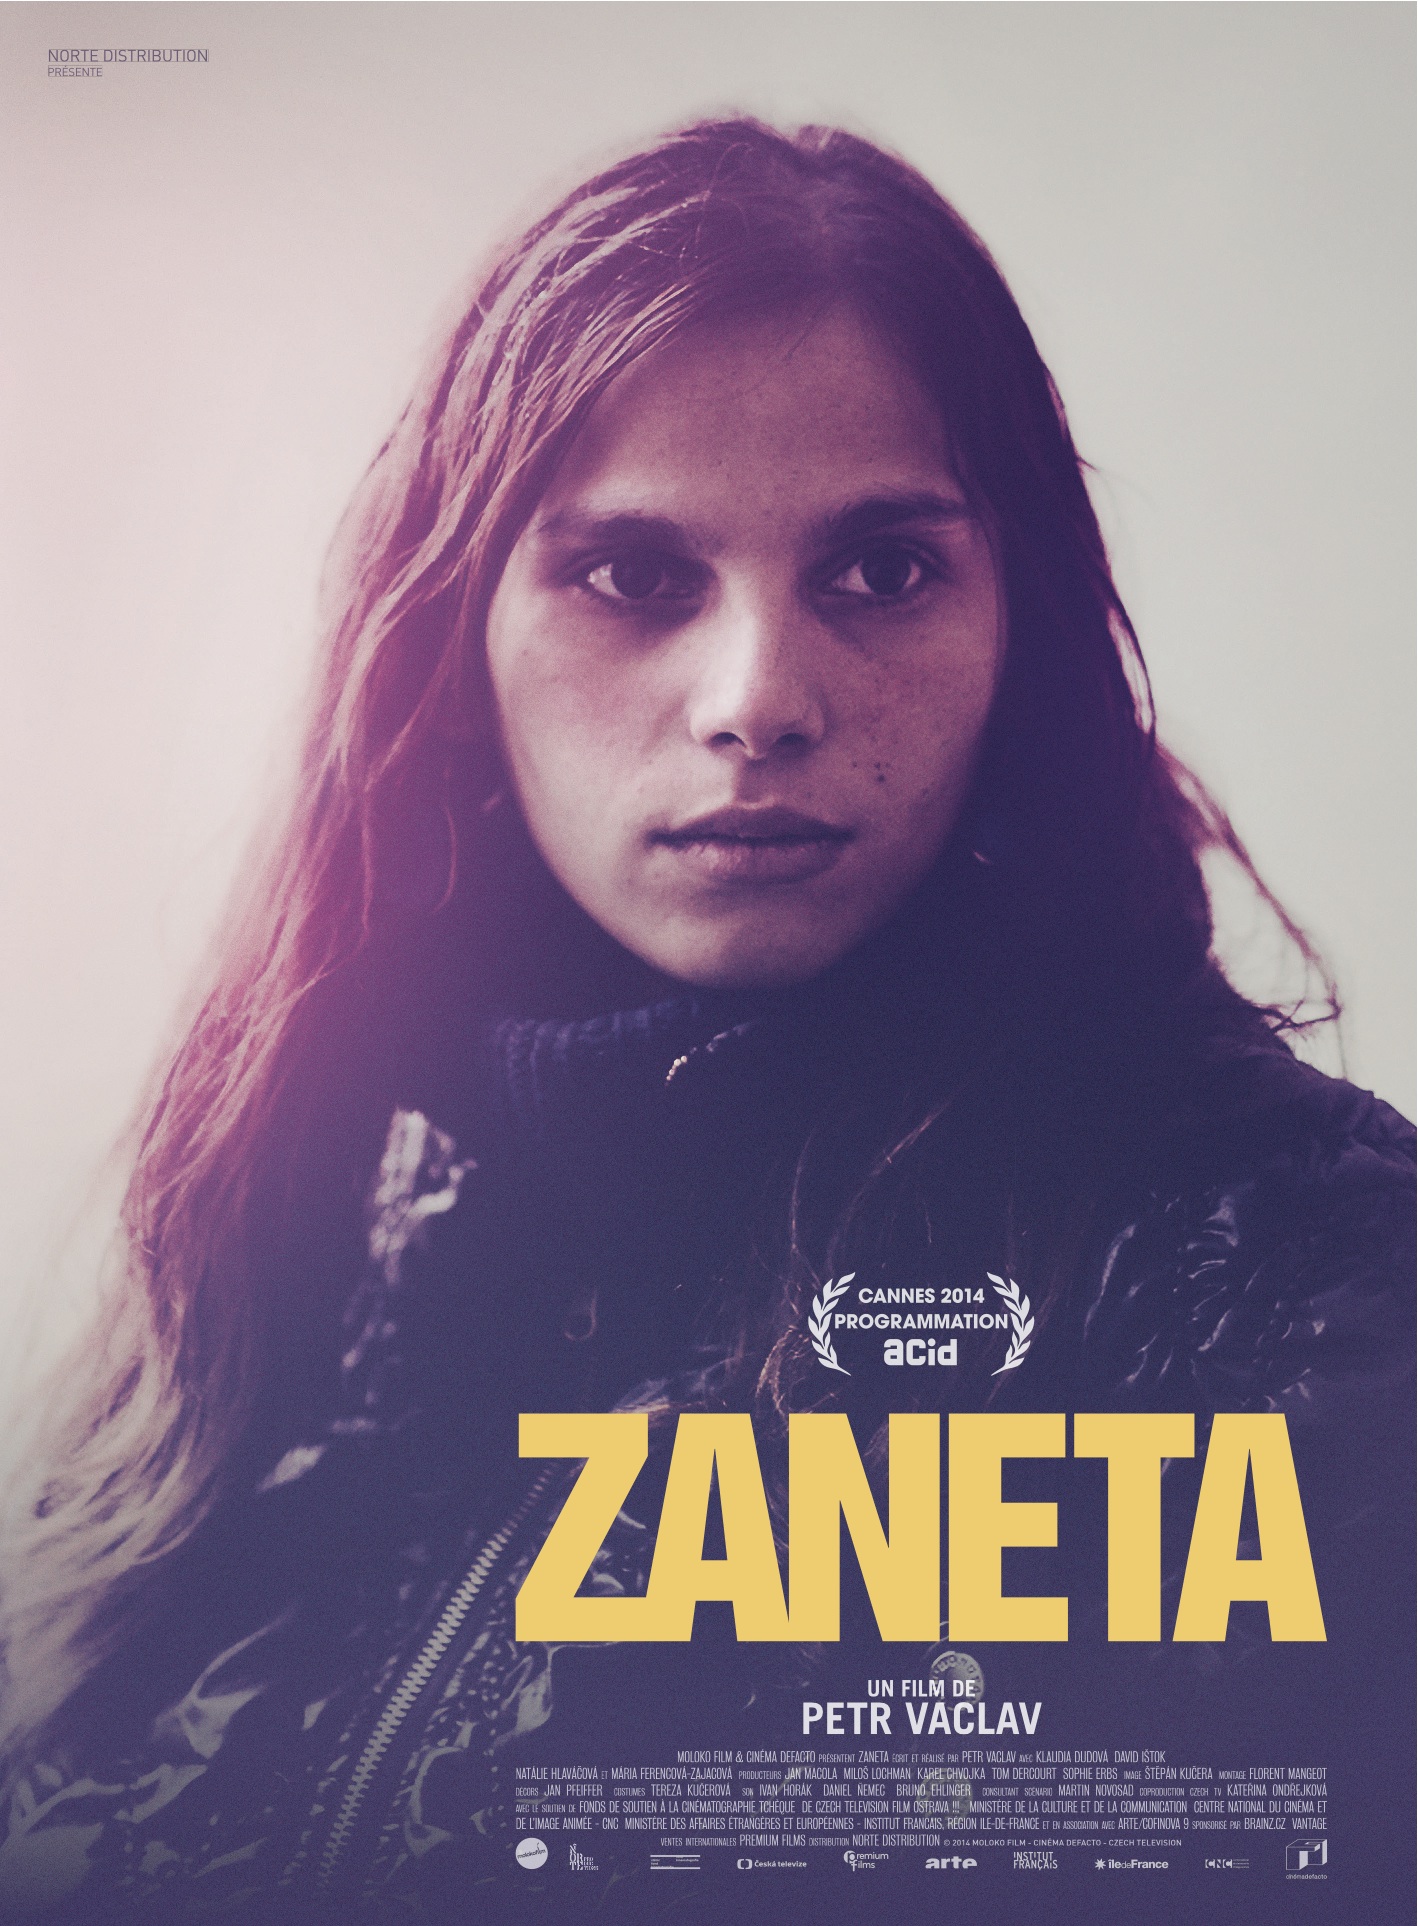 [CRITIQUE] "Zaneta" (2014) de Petr Václav 90 image